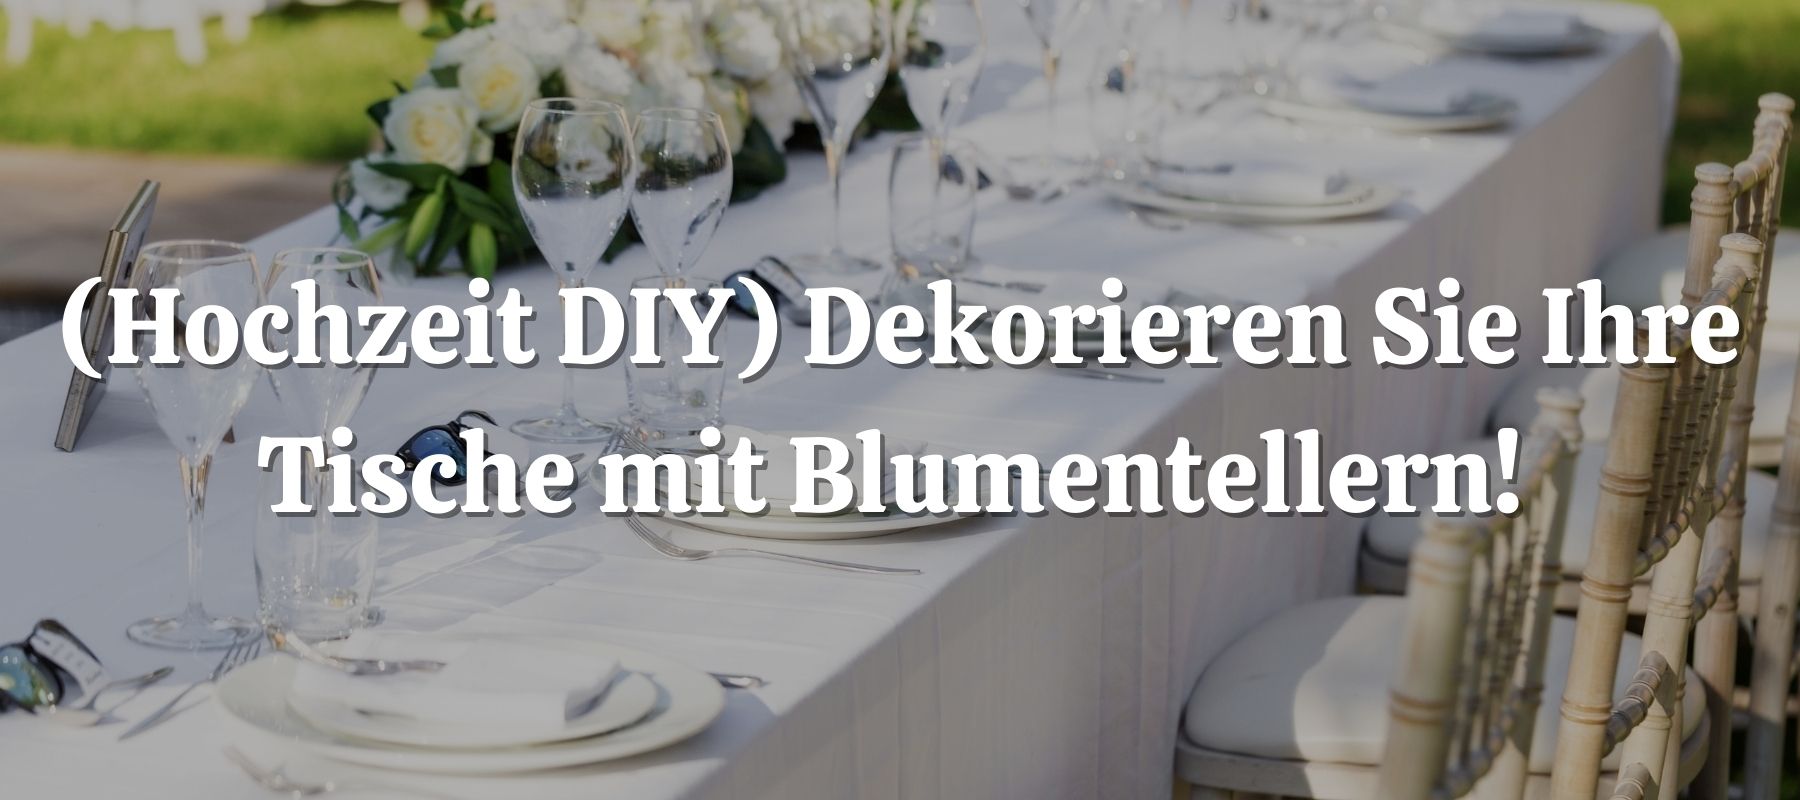 Hochzeit DIY Dekorieren Sie Ihre Tische mit Blumentellern